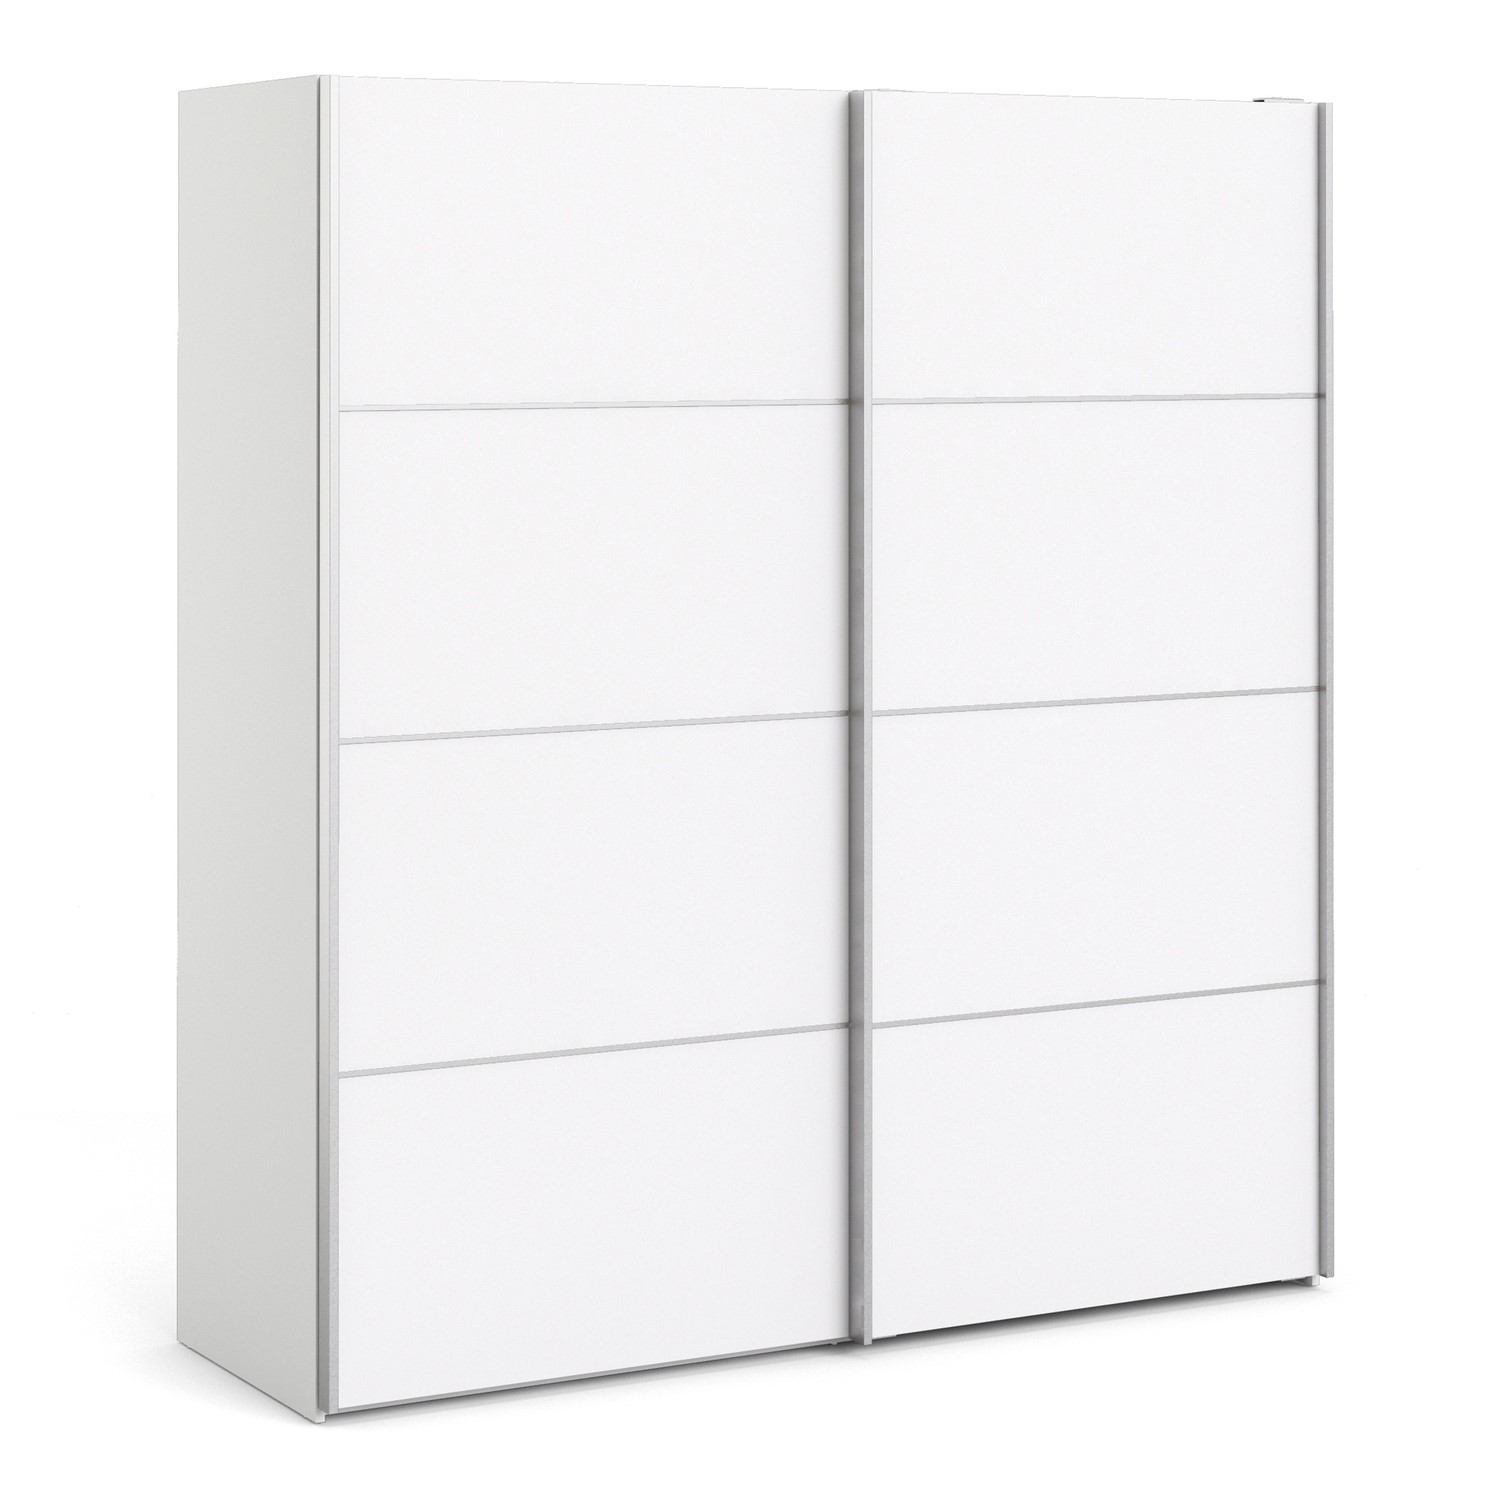 Photo of Tall white 2 door sliding wardrobe with shelves - verona